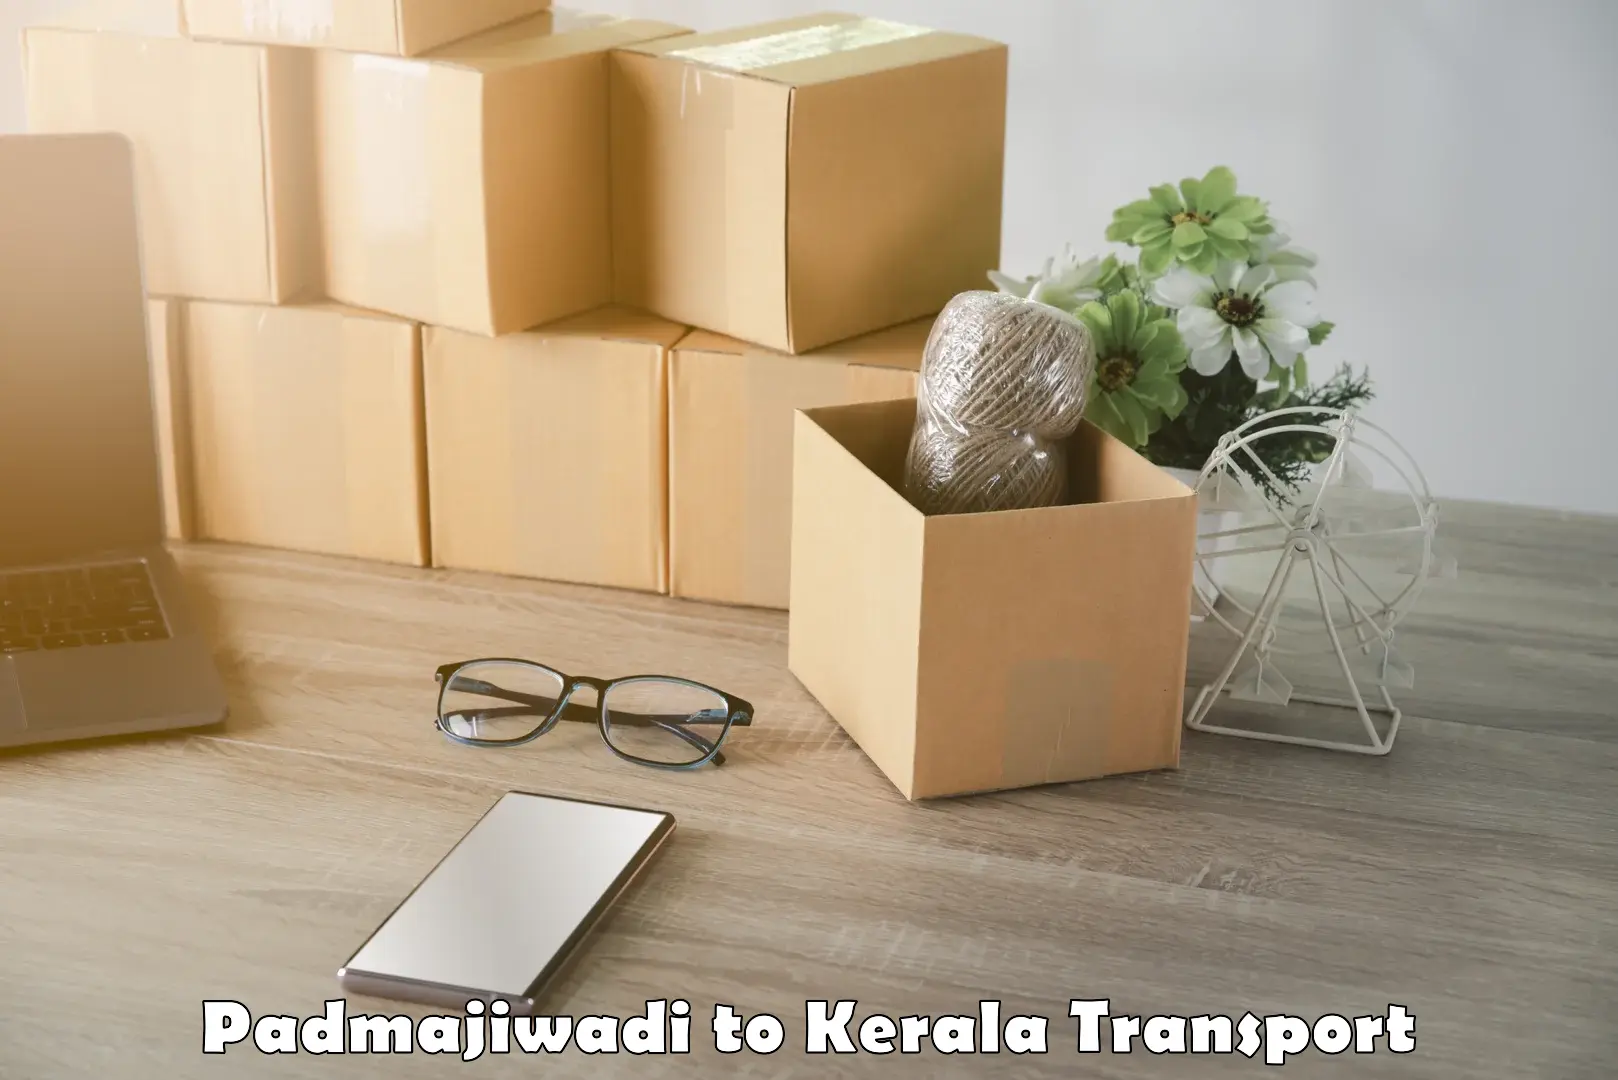 Daily transport service Padmajiwadi to Mavelikara